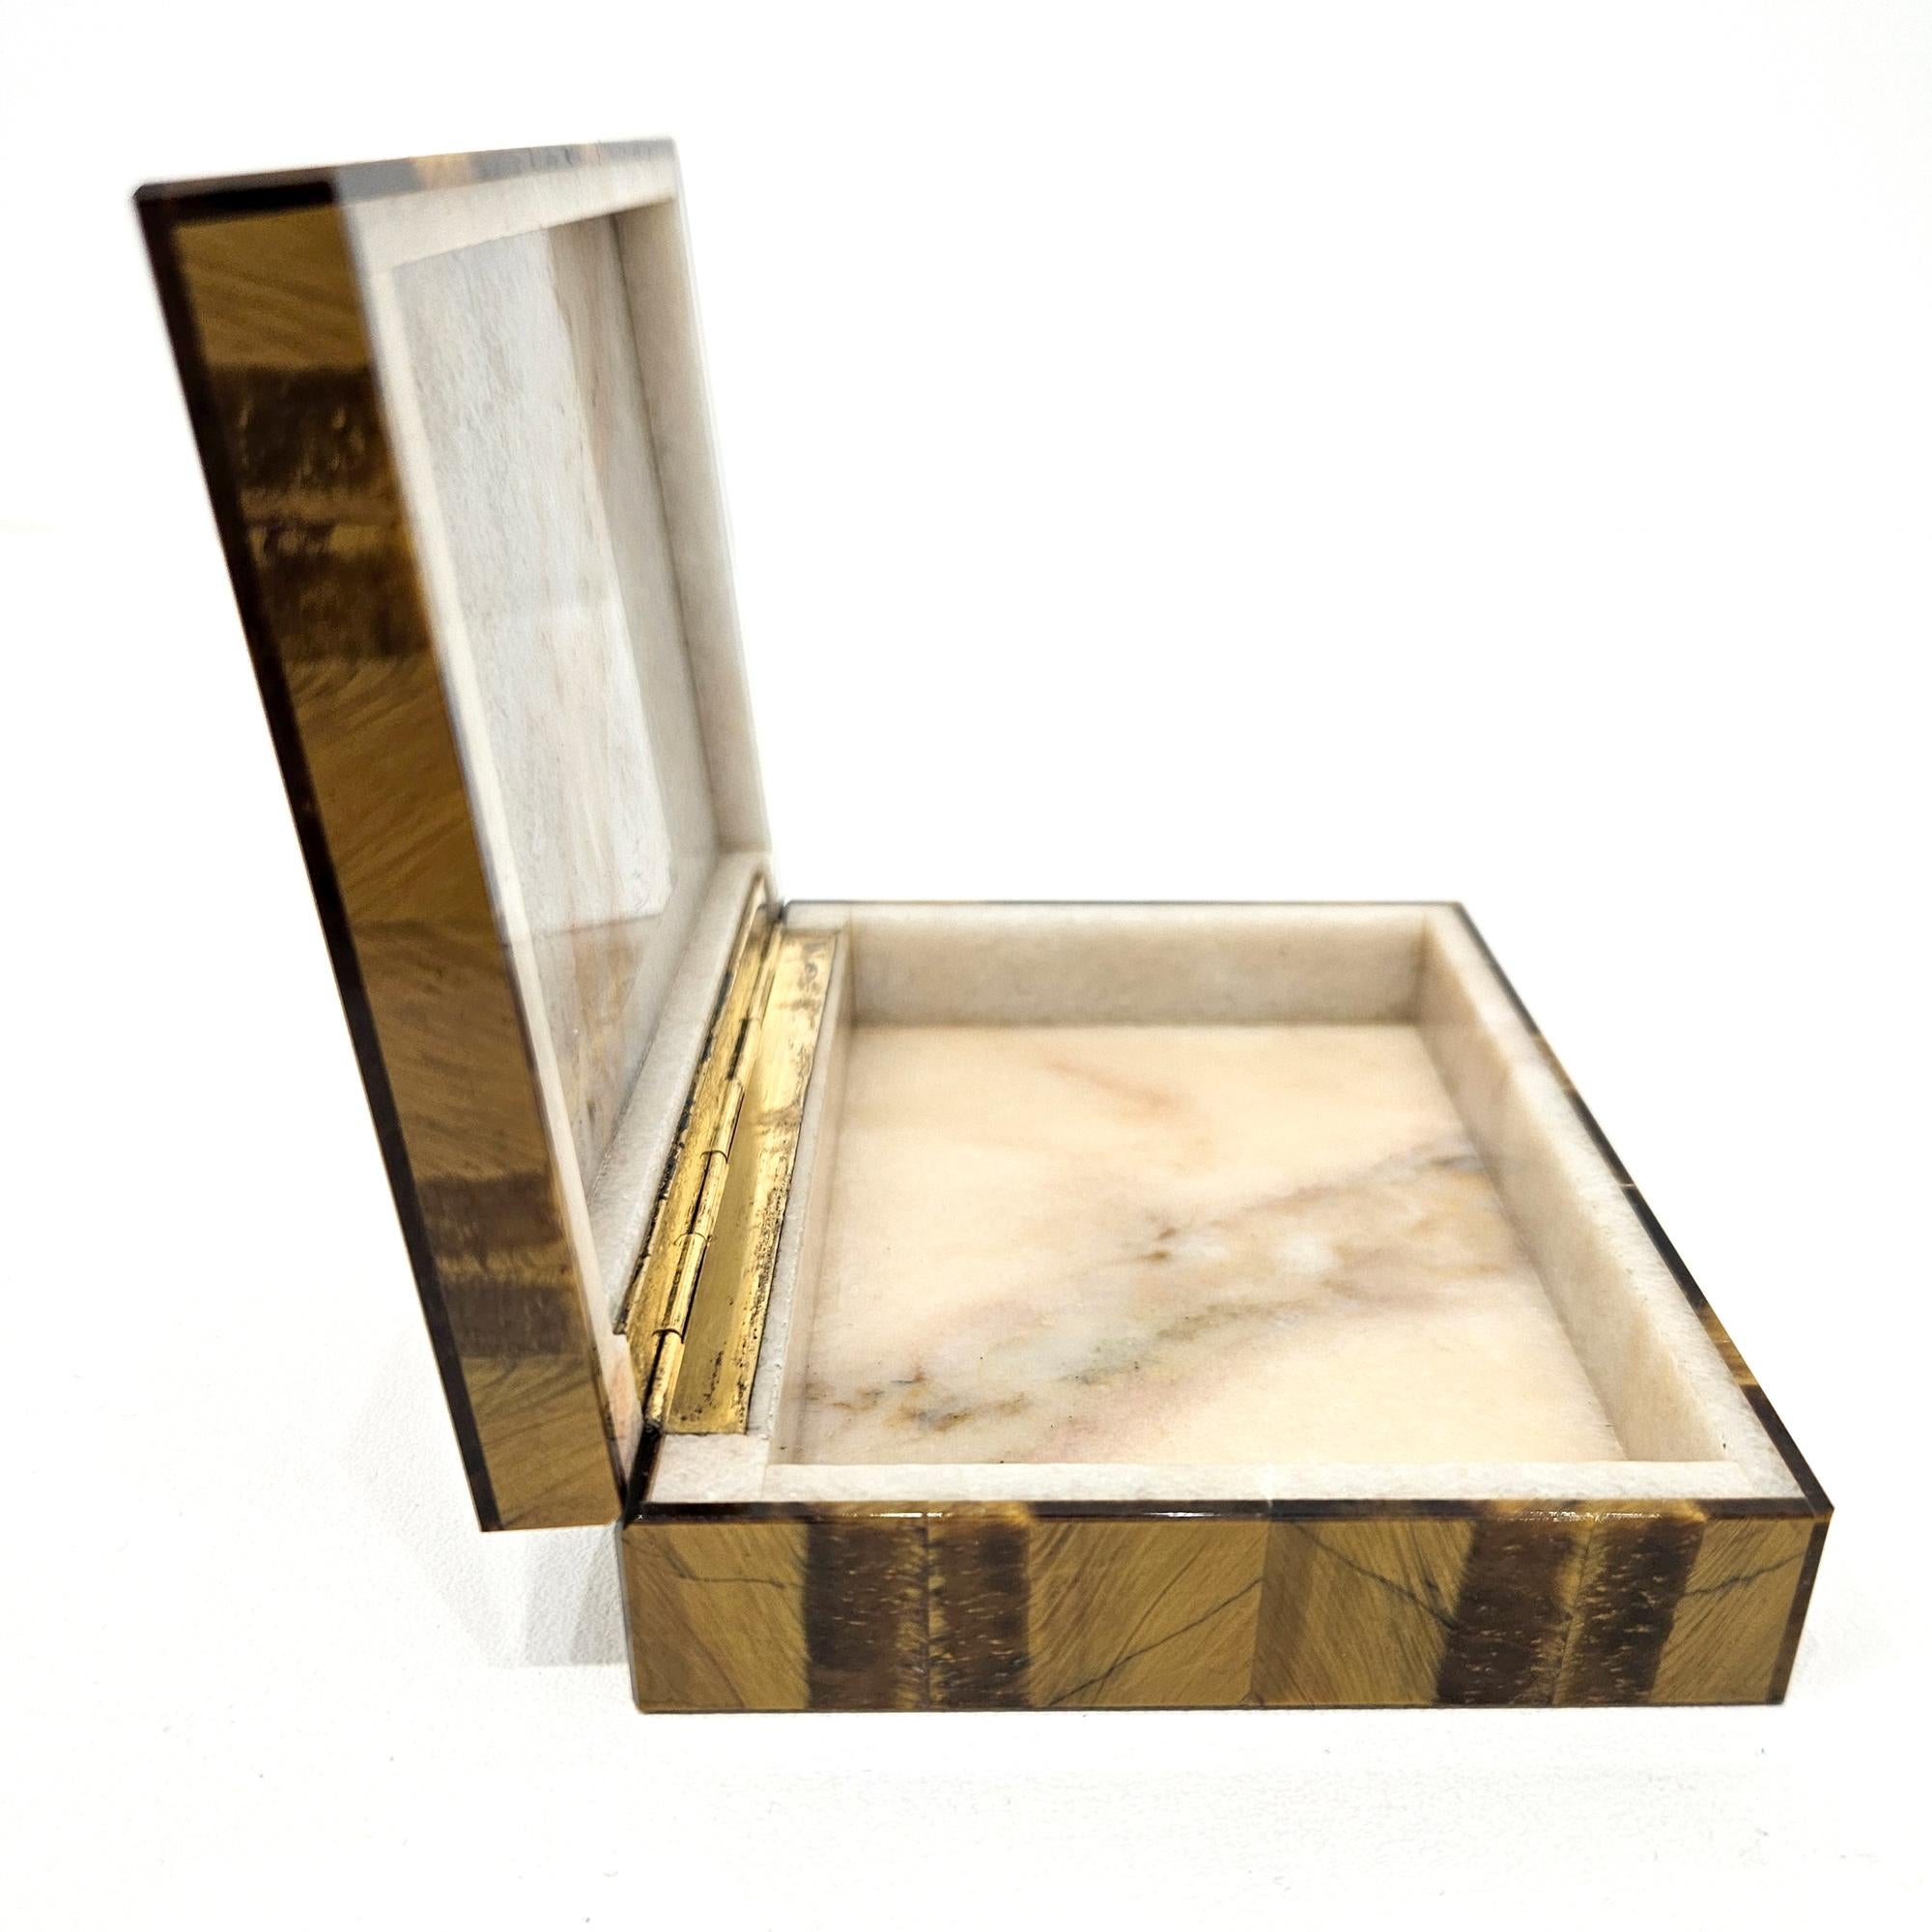 20th Century Tiger’s Eye Intarsia Box, 1960s Italian, stamped Gori & Zucchi (Unoaerre)  For Sale